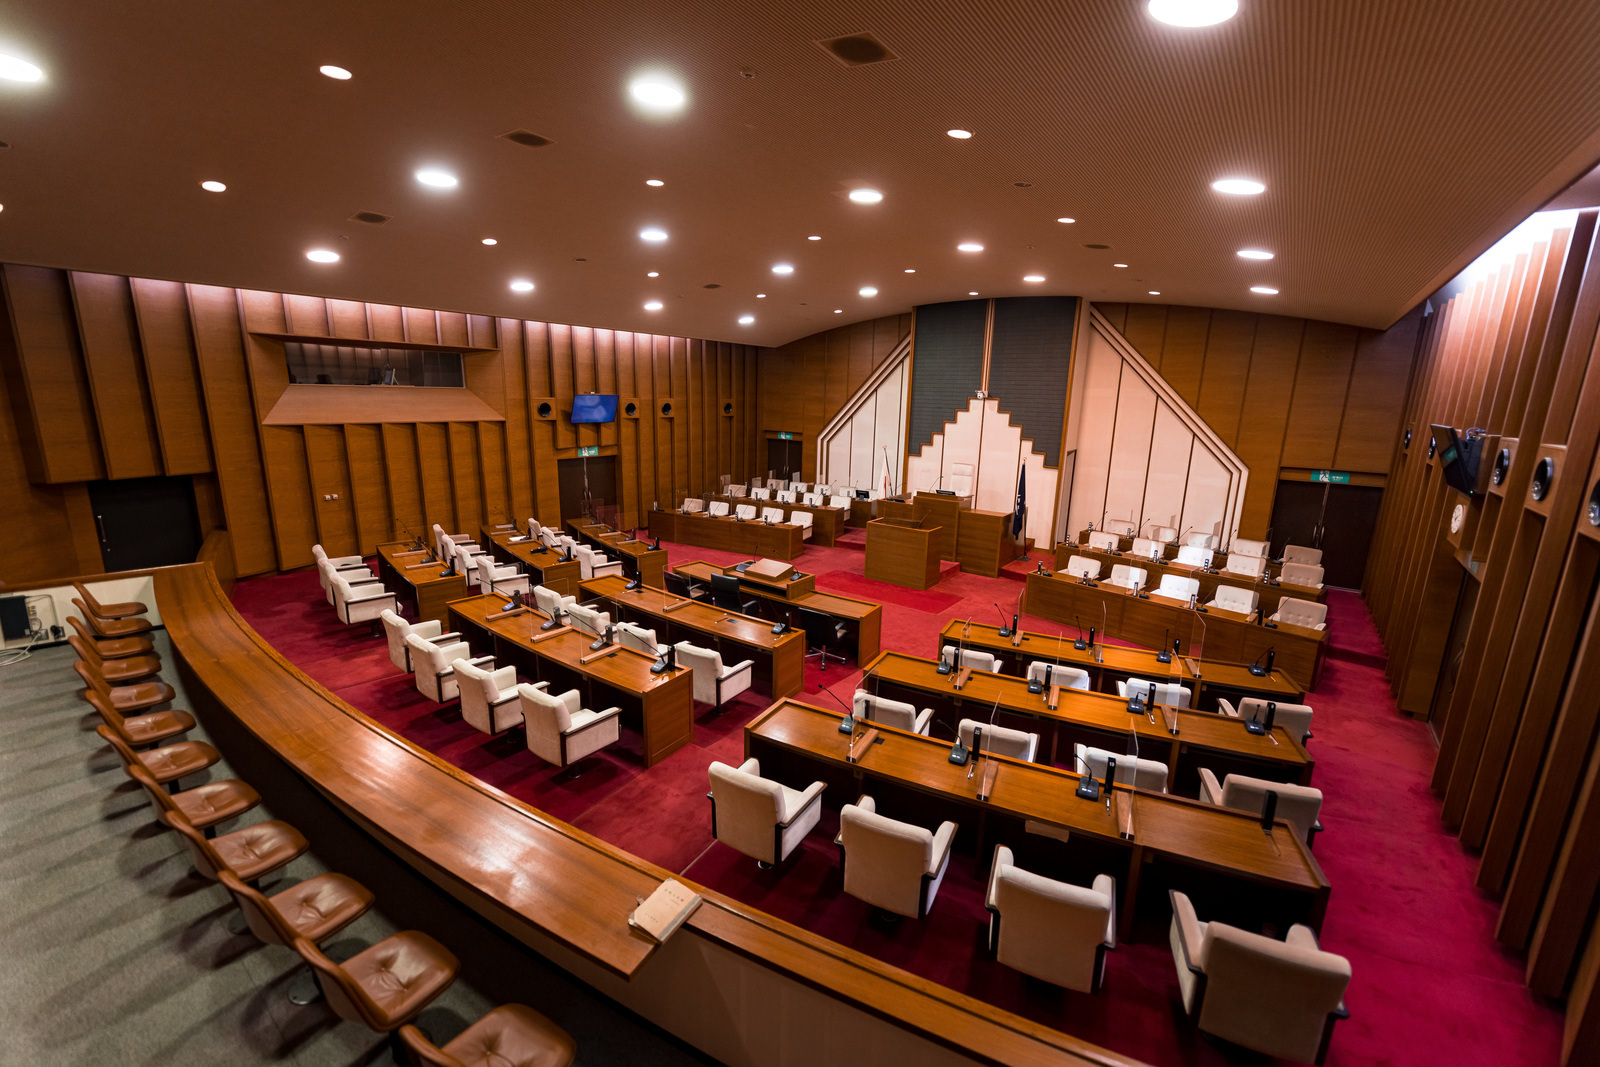 「津山市議会の議場内を報道席から激写 | フリー素材のぱくたそ」の写真